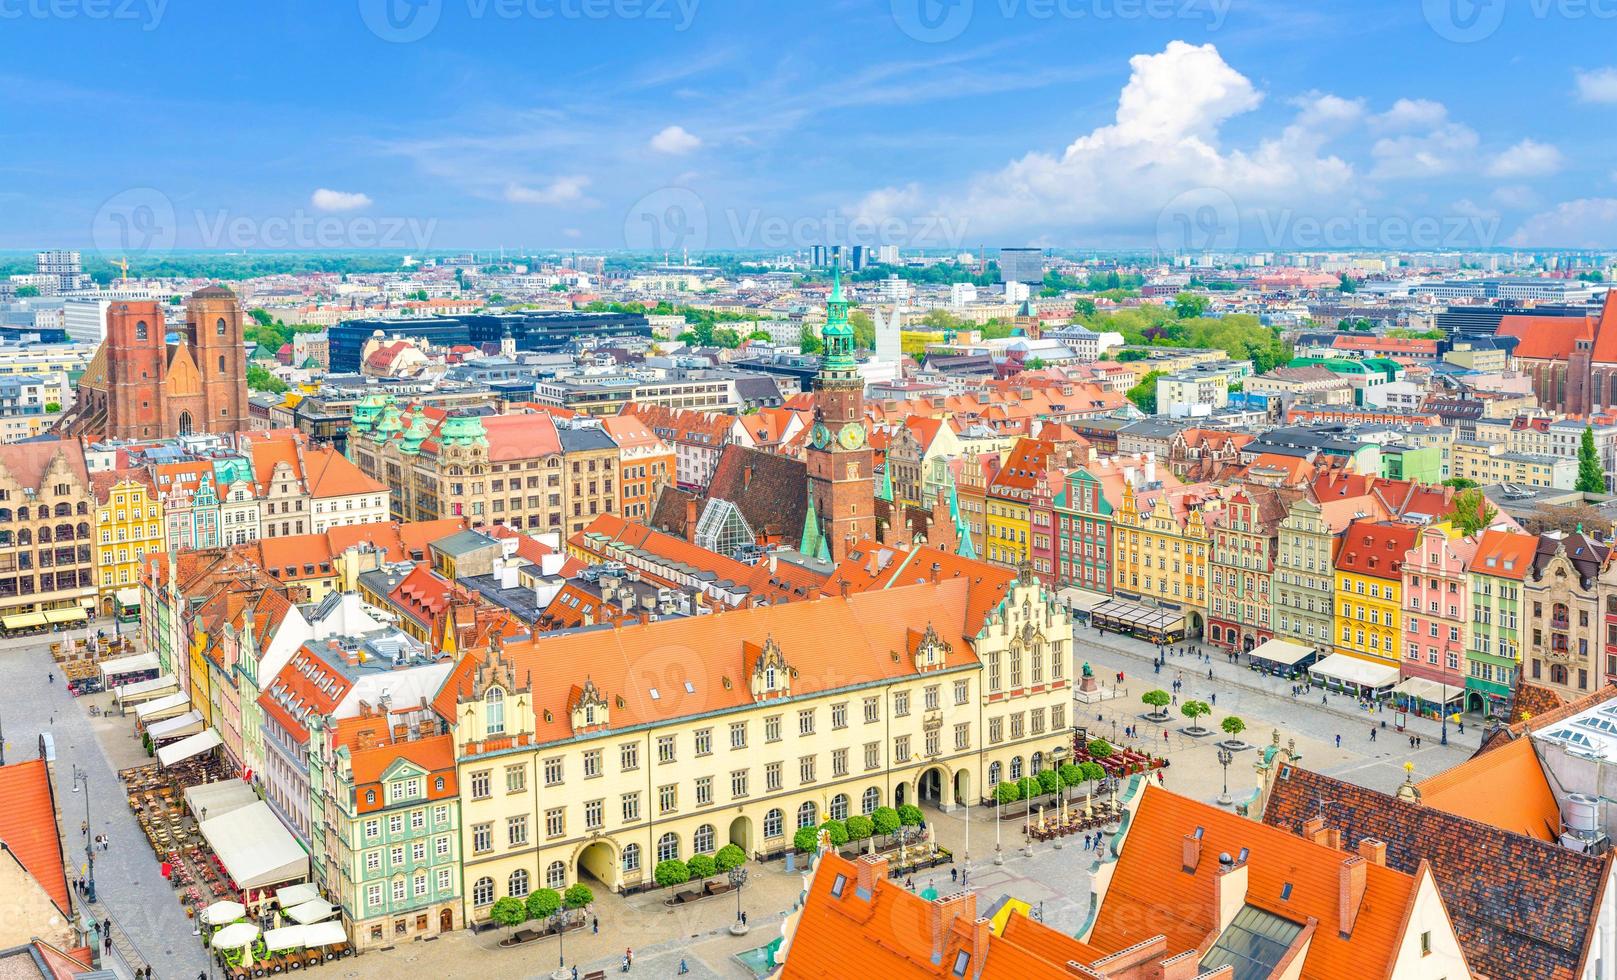 haut vue panoramique aérienne de la vieille ville de wroclaw centre-ville historique avec la place du marché rynek photo